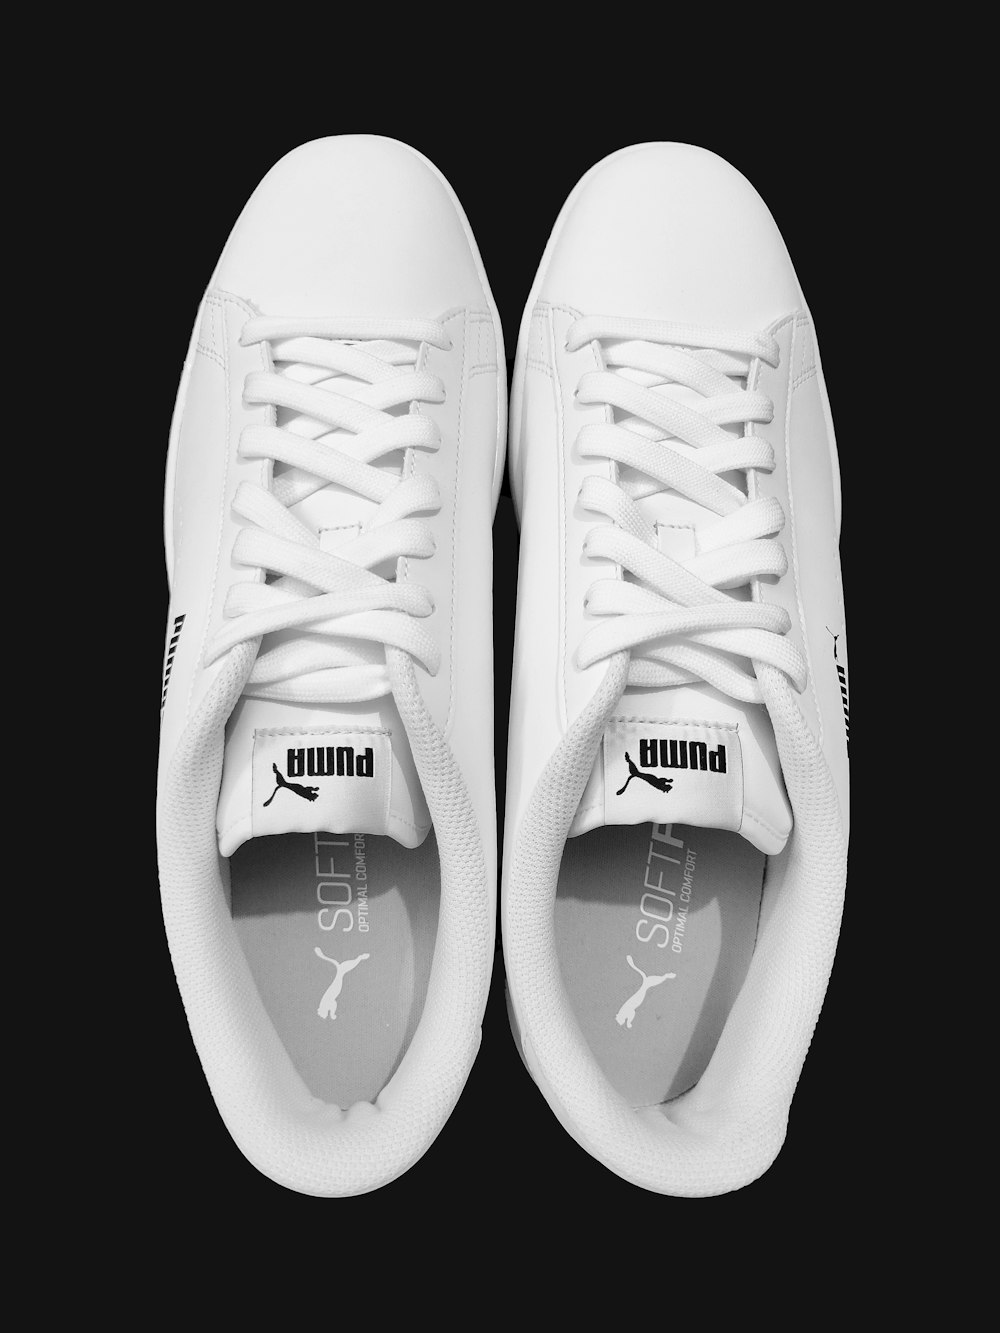 Foto adidas yeezy boost 350 blancas – Imagen Gris gratis en Unsplash